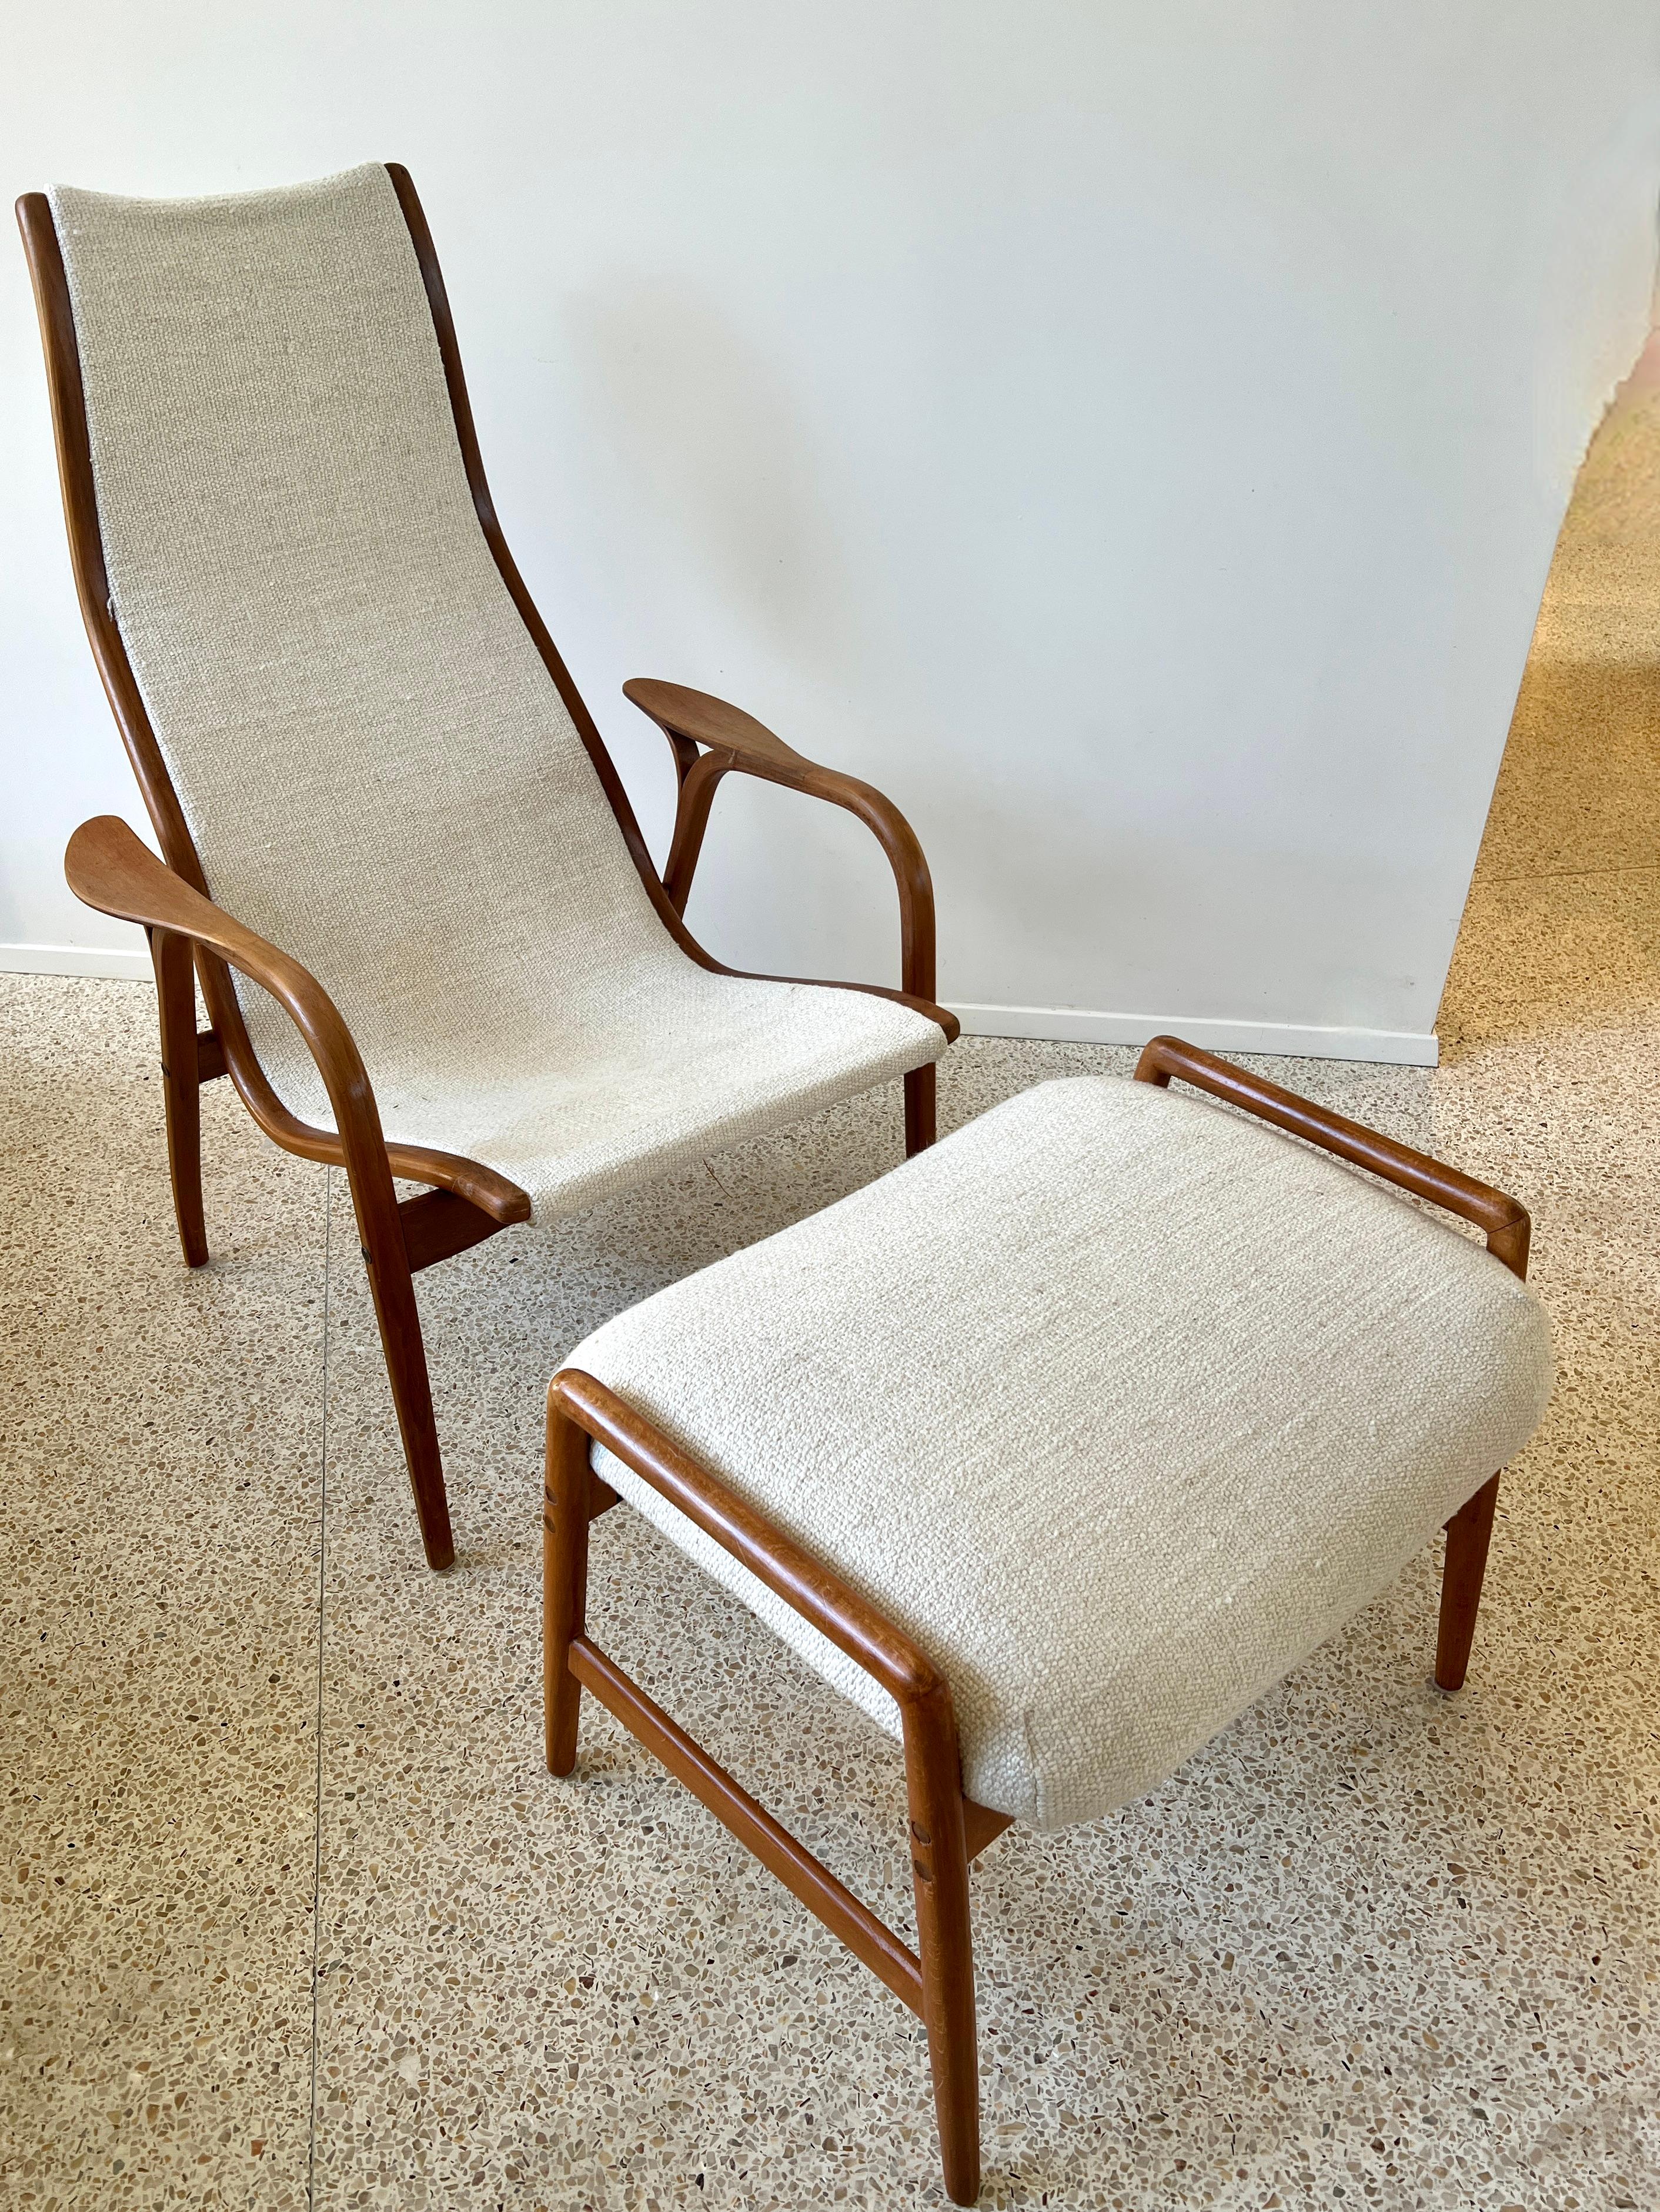 Der klassische und zeitlose Lamino Stuhl, entworfen von Yngve Ekstrom für Swedese.

Obwohl der Stuhl und der dazugehörige Hocker Mitte des 20. Jahrhunderts entworfen wurden, bewahren sie ihren modernen und ikonischen architektonischen Stil mit